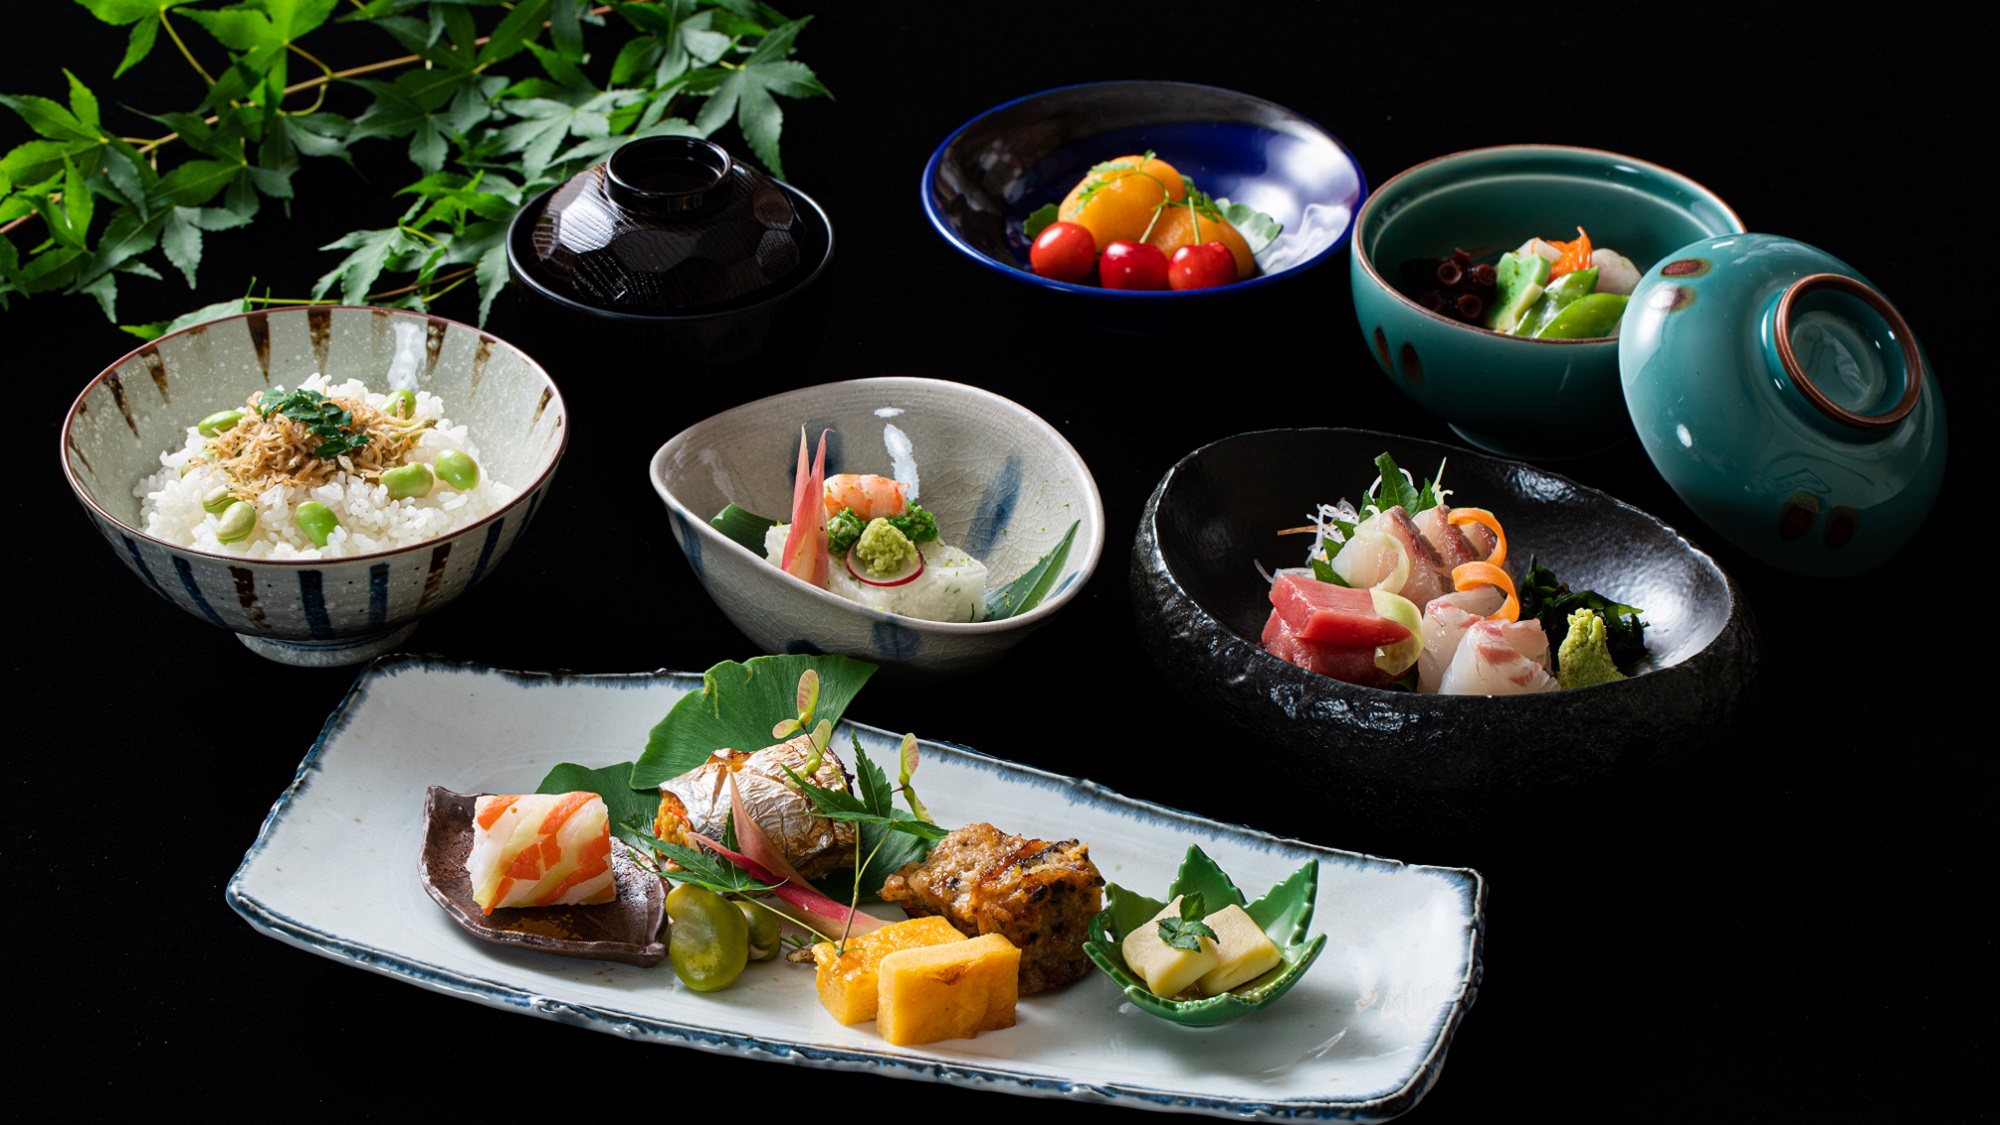 【夕食】某老舗日本料理店出身の料理人が腕をふるう、贅沢なディナー懐石